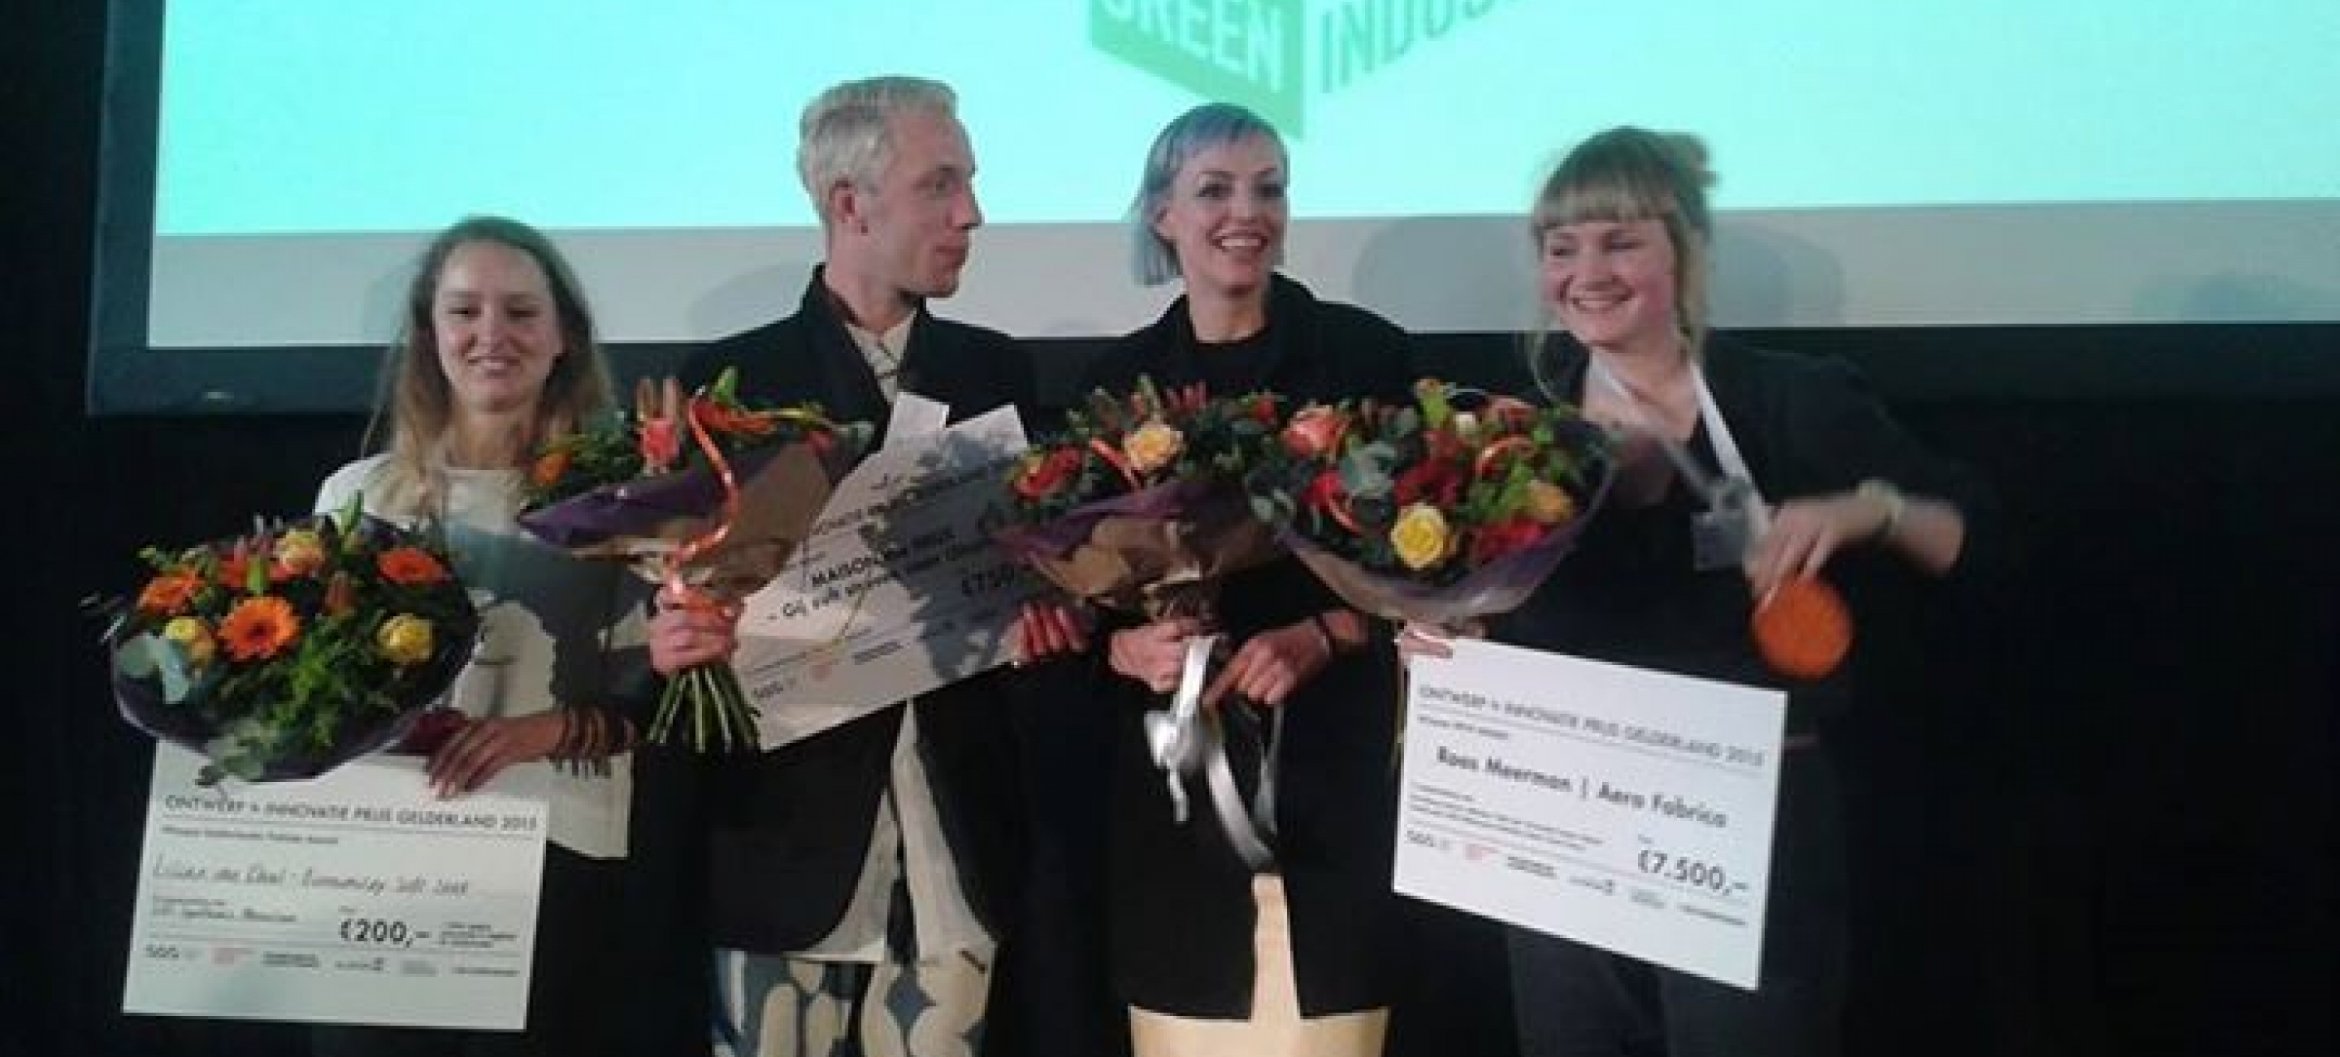 Roos Meerman wint ontwerpprijs Gelderland